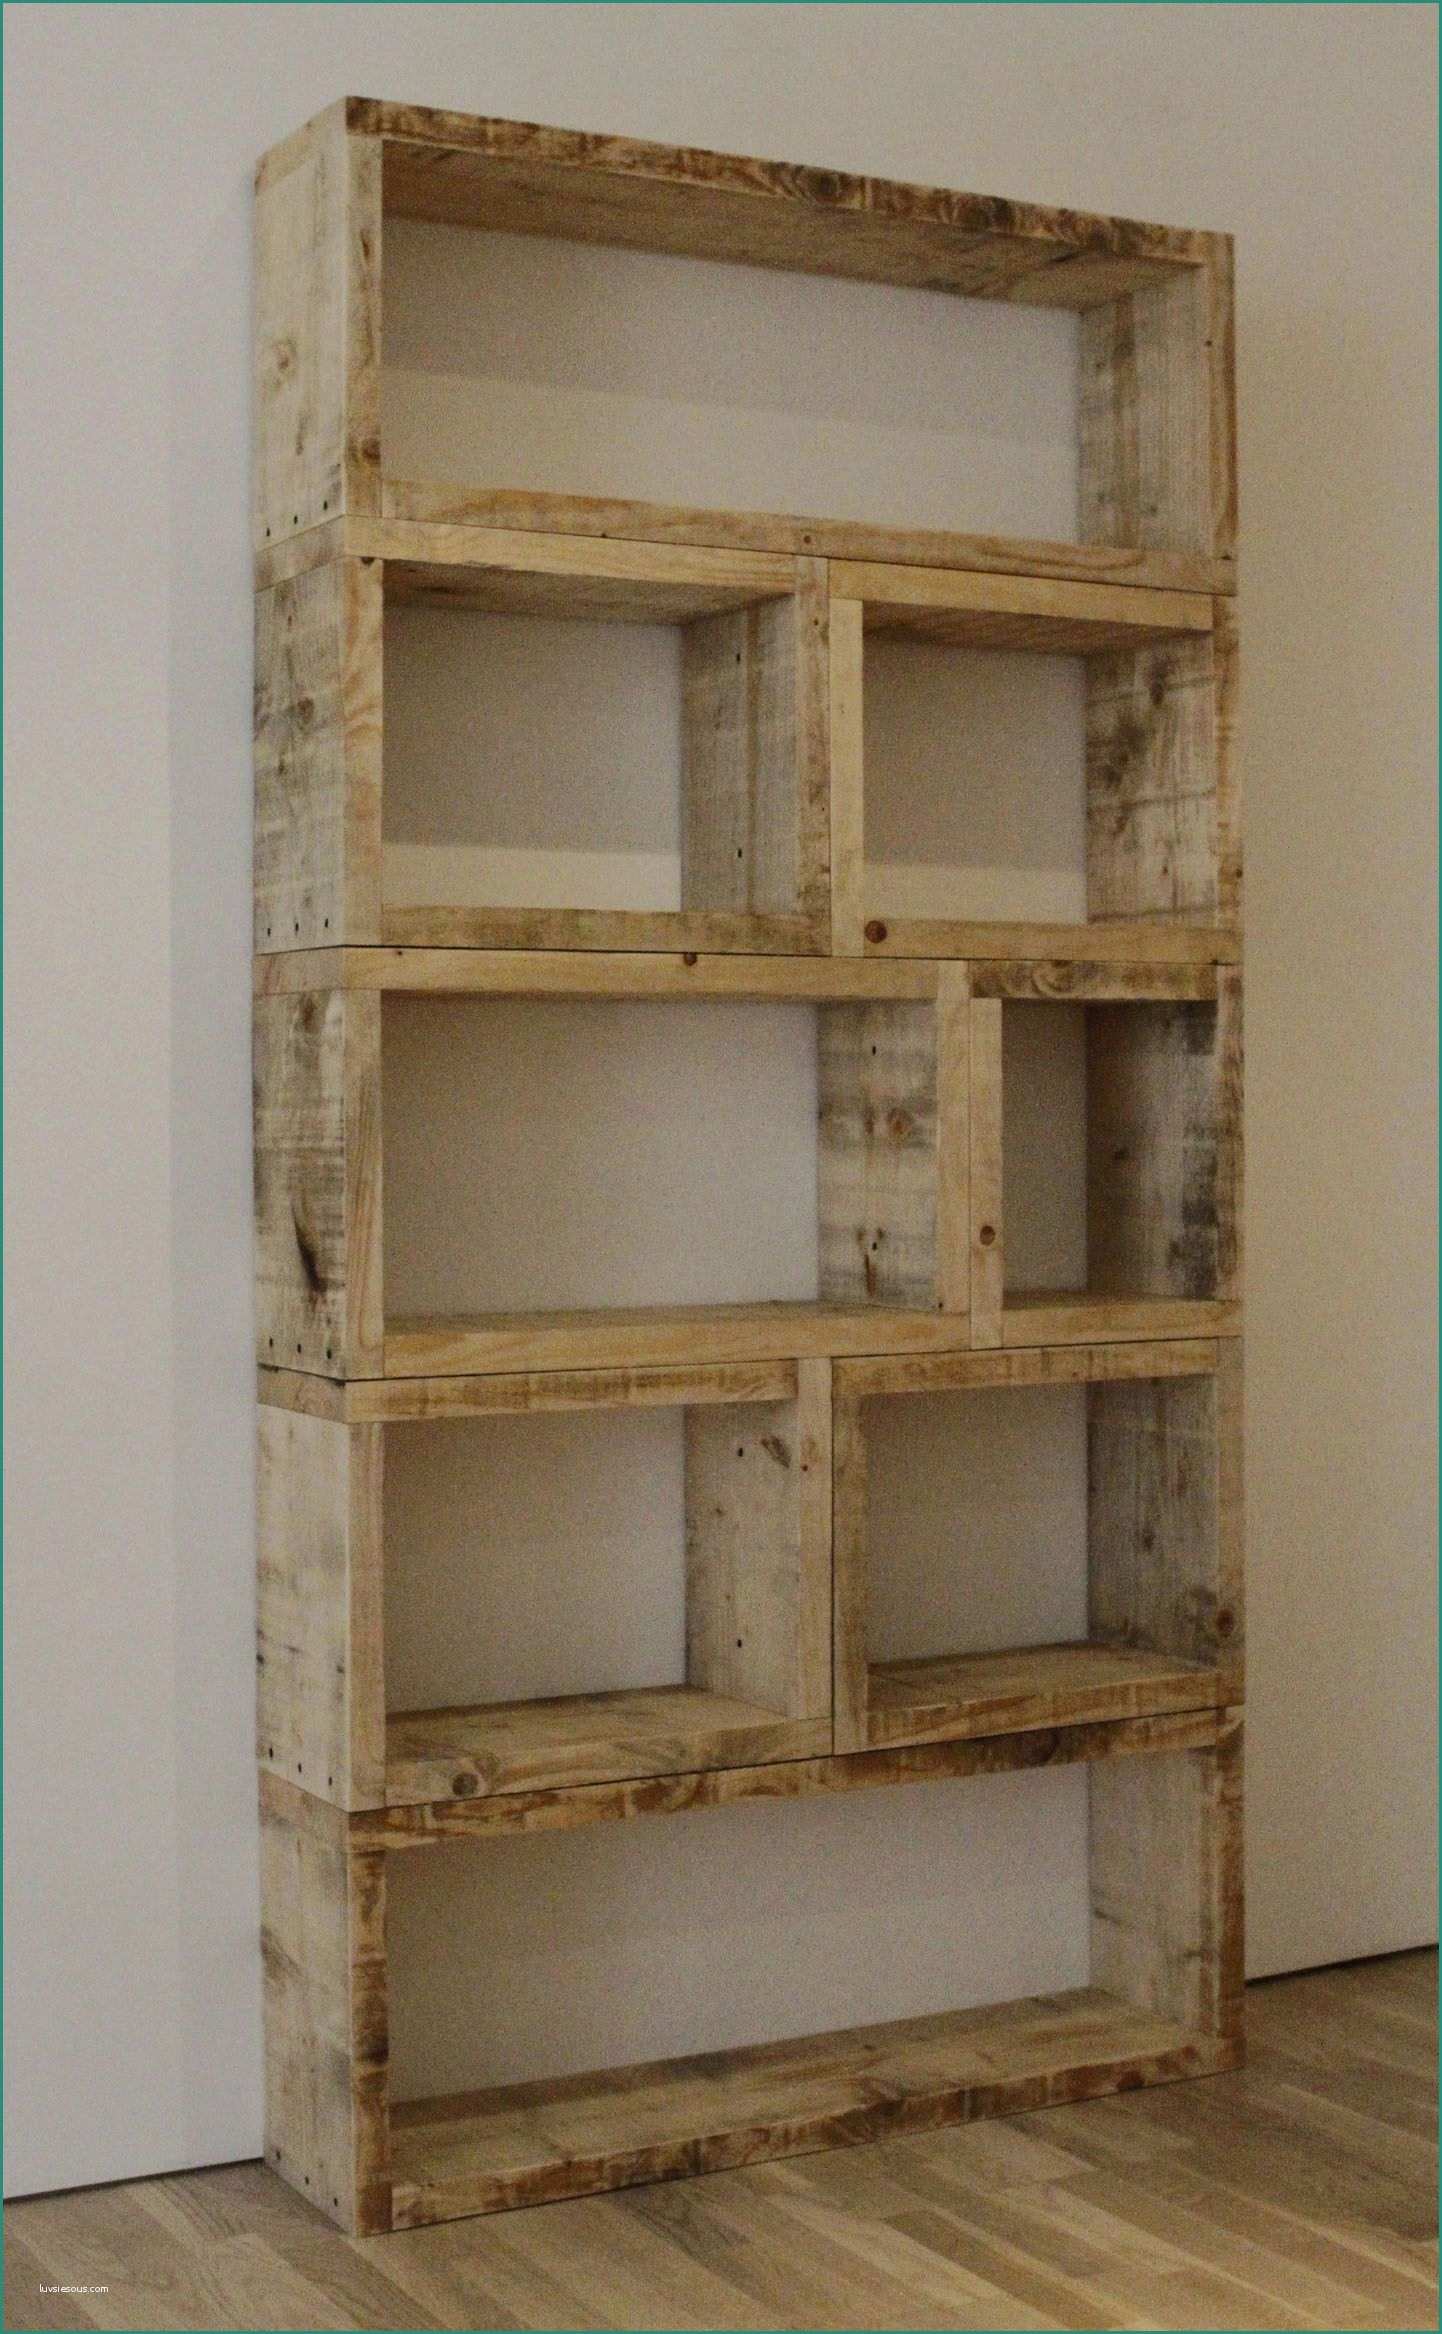 Letto soppalco Fai Da Te E Diy Rustic Bookcase This is so Simple yet Effective 2x8 Modular